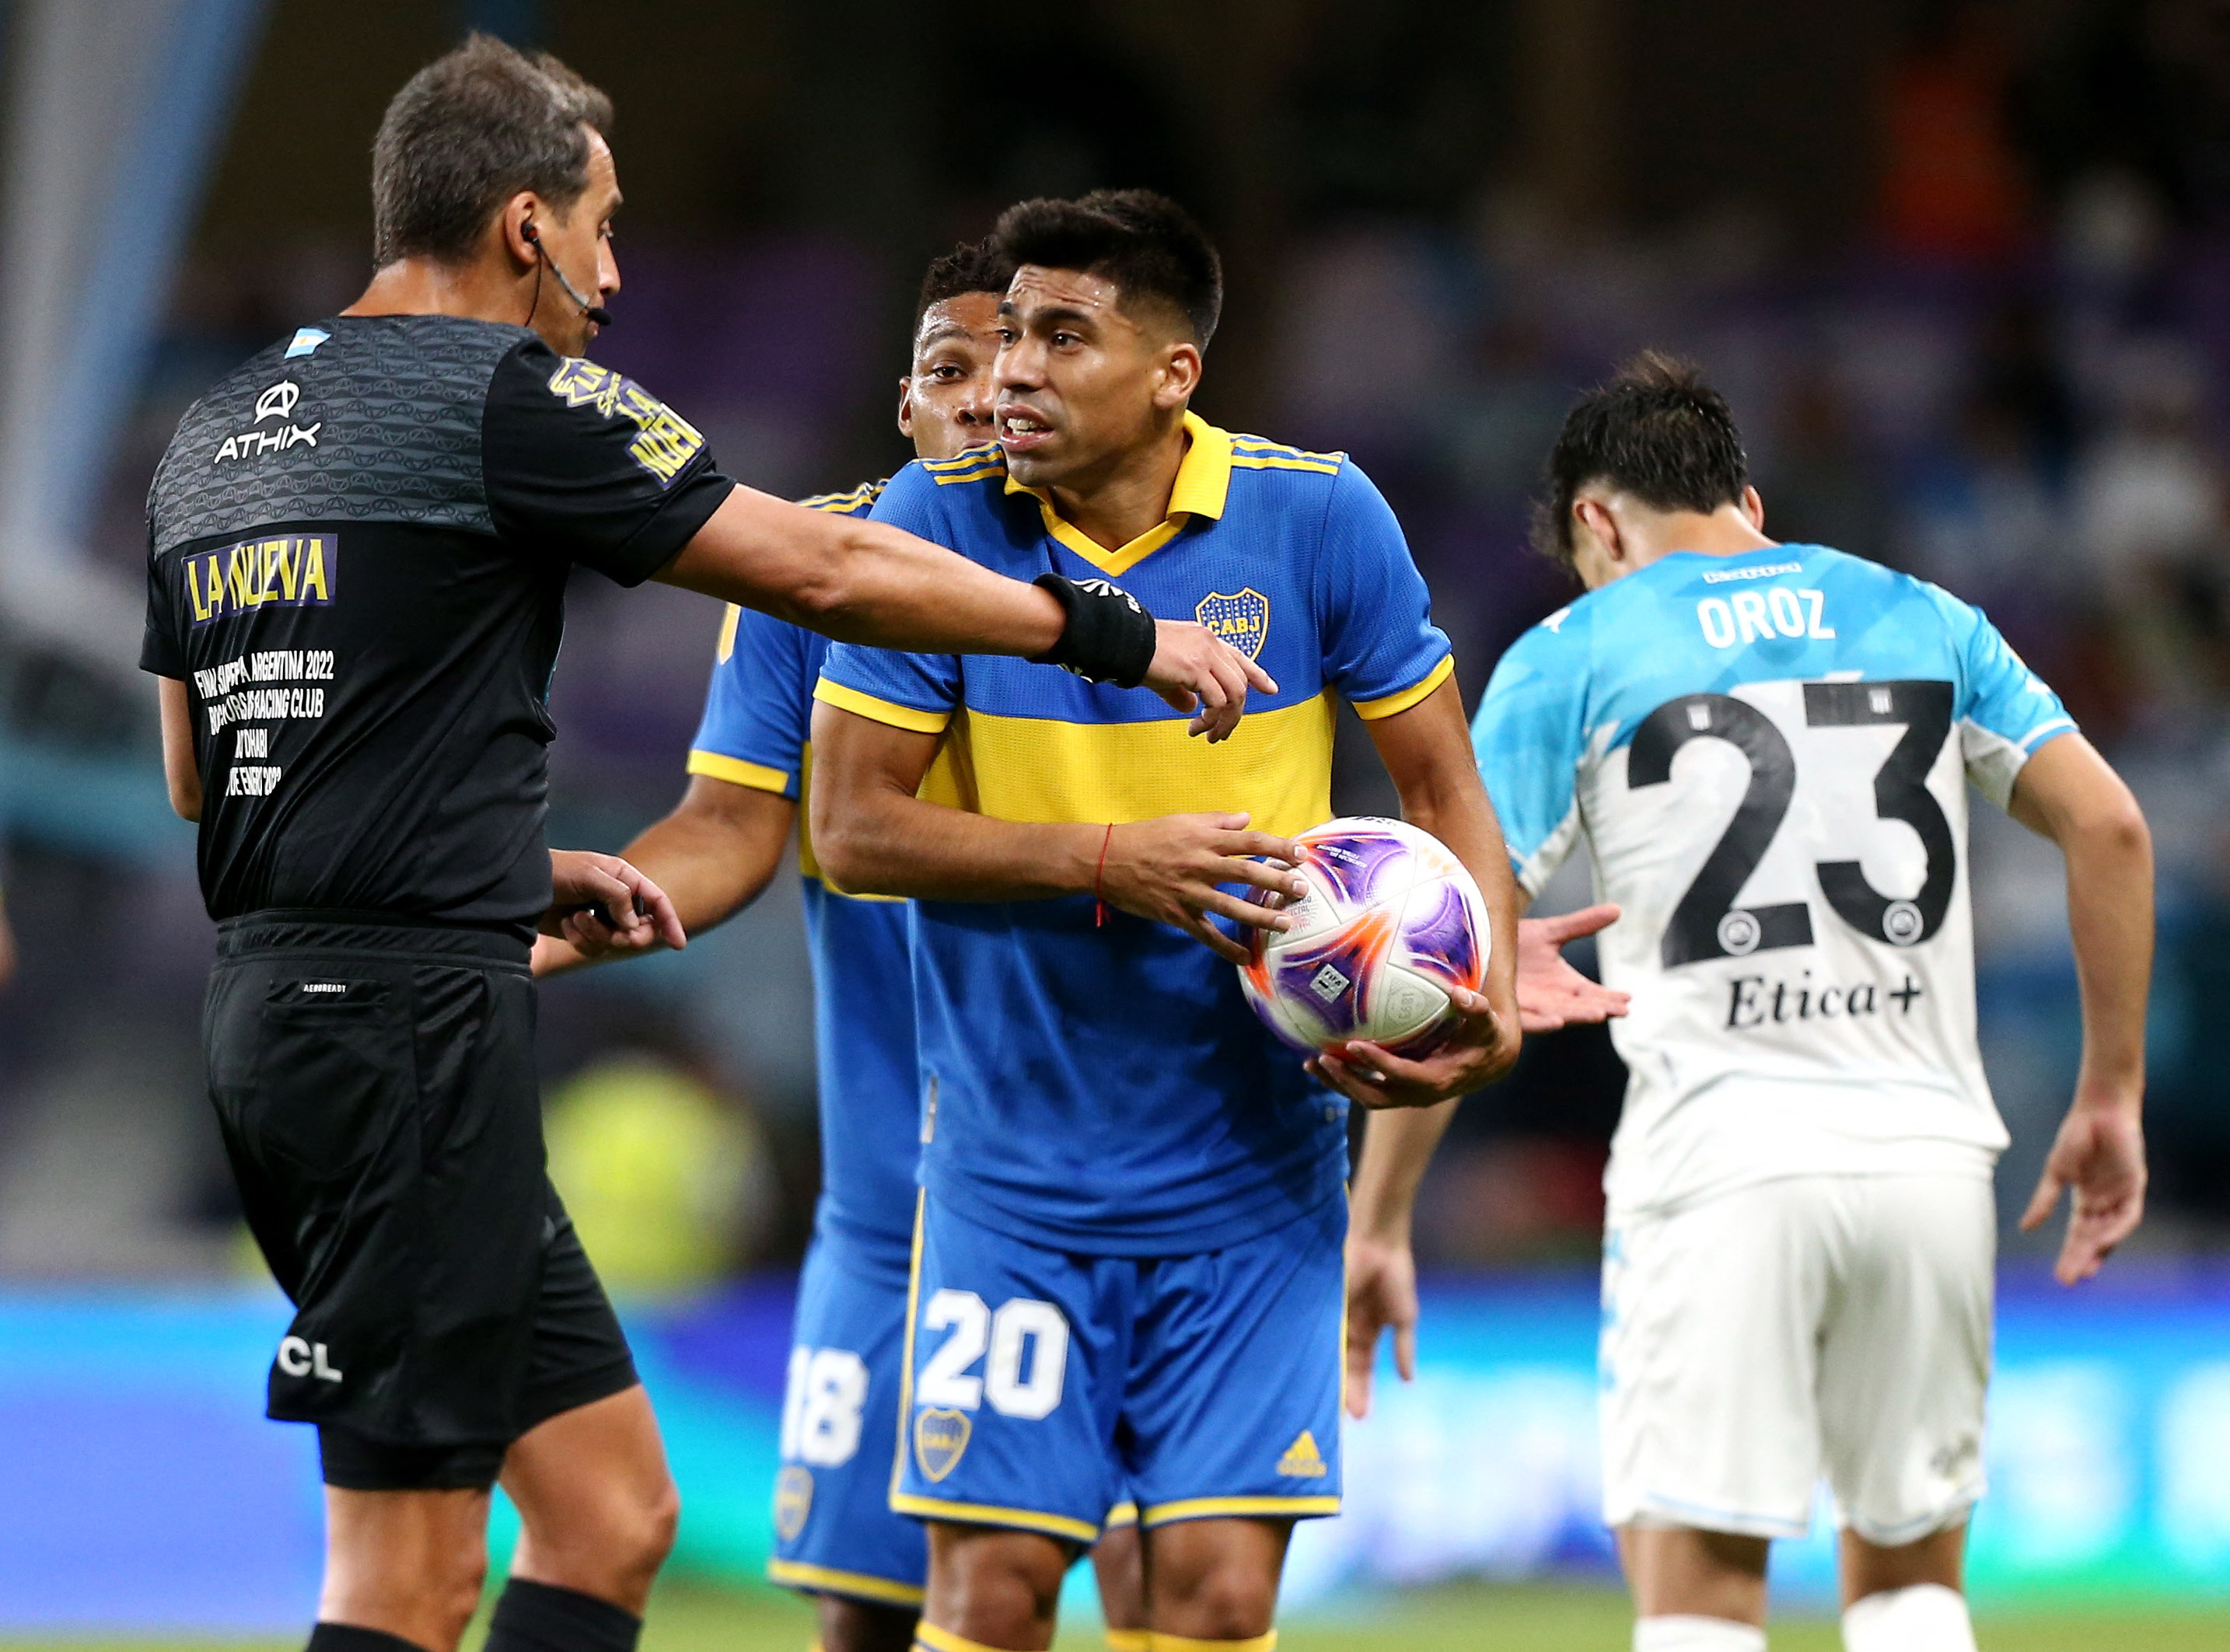 Racing venció a Boca Juniors con un polémico penal en el final y se consagró campeón de la Supercopa Internacional - Infobae